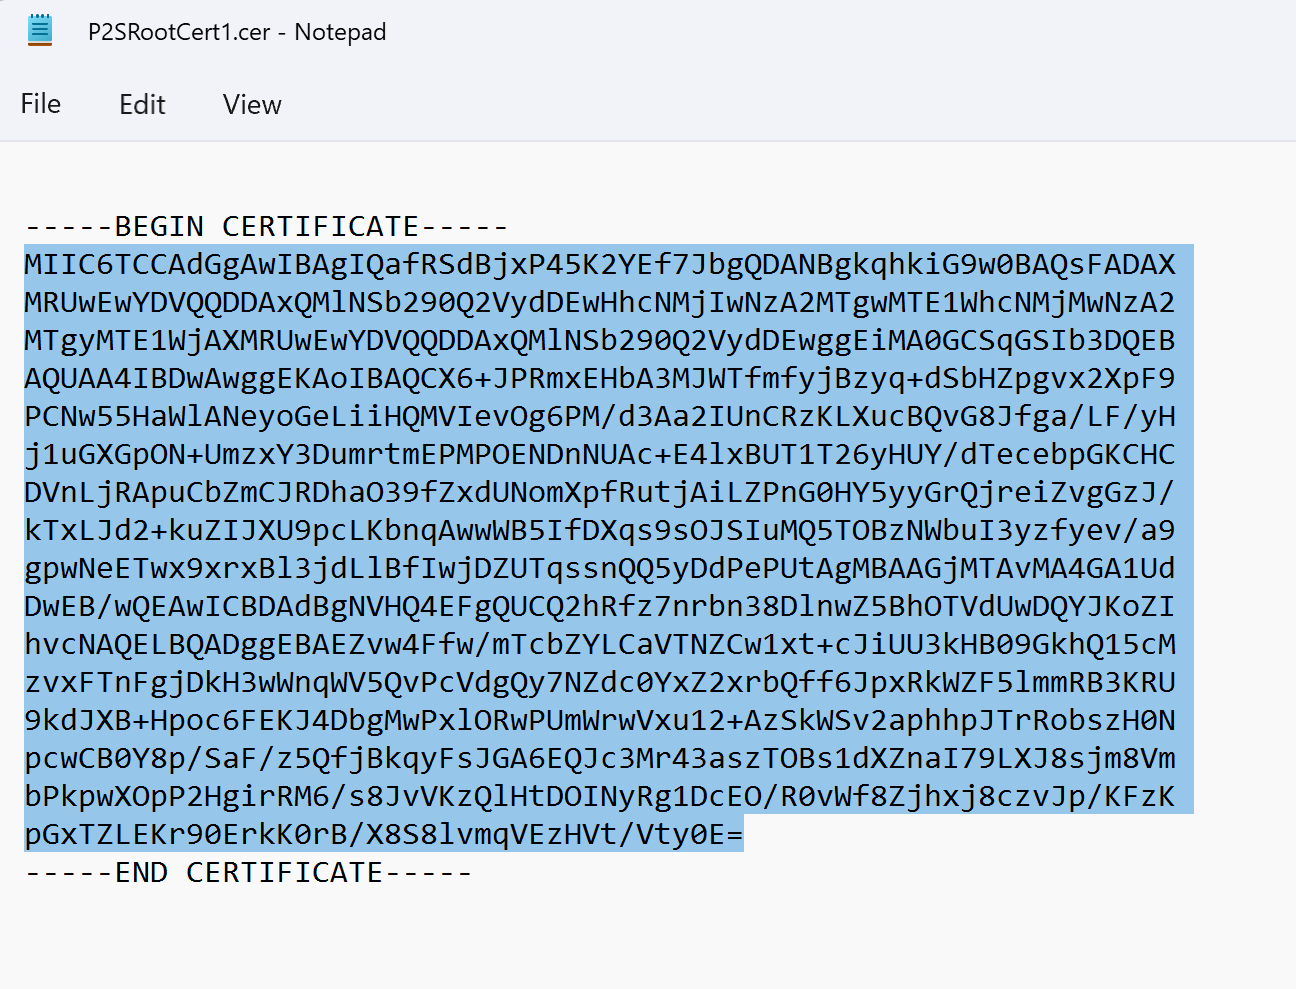 Снимок экрана: в Блокноте открыт CER-файл, в котором выделены данные сертификата.